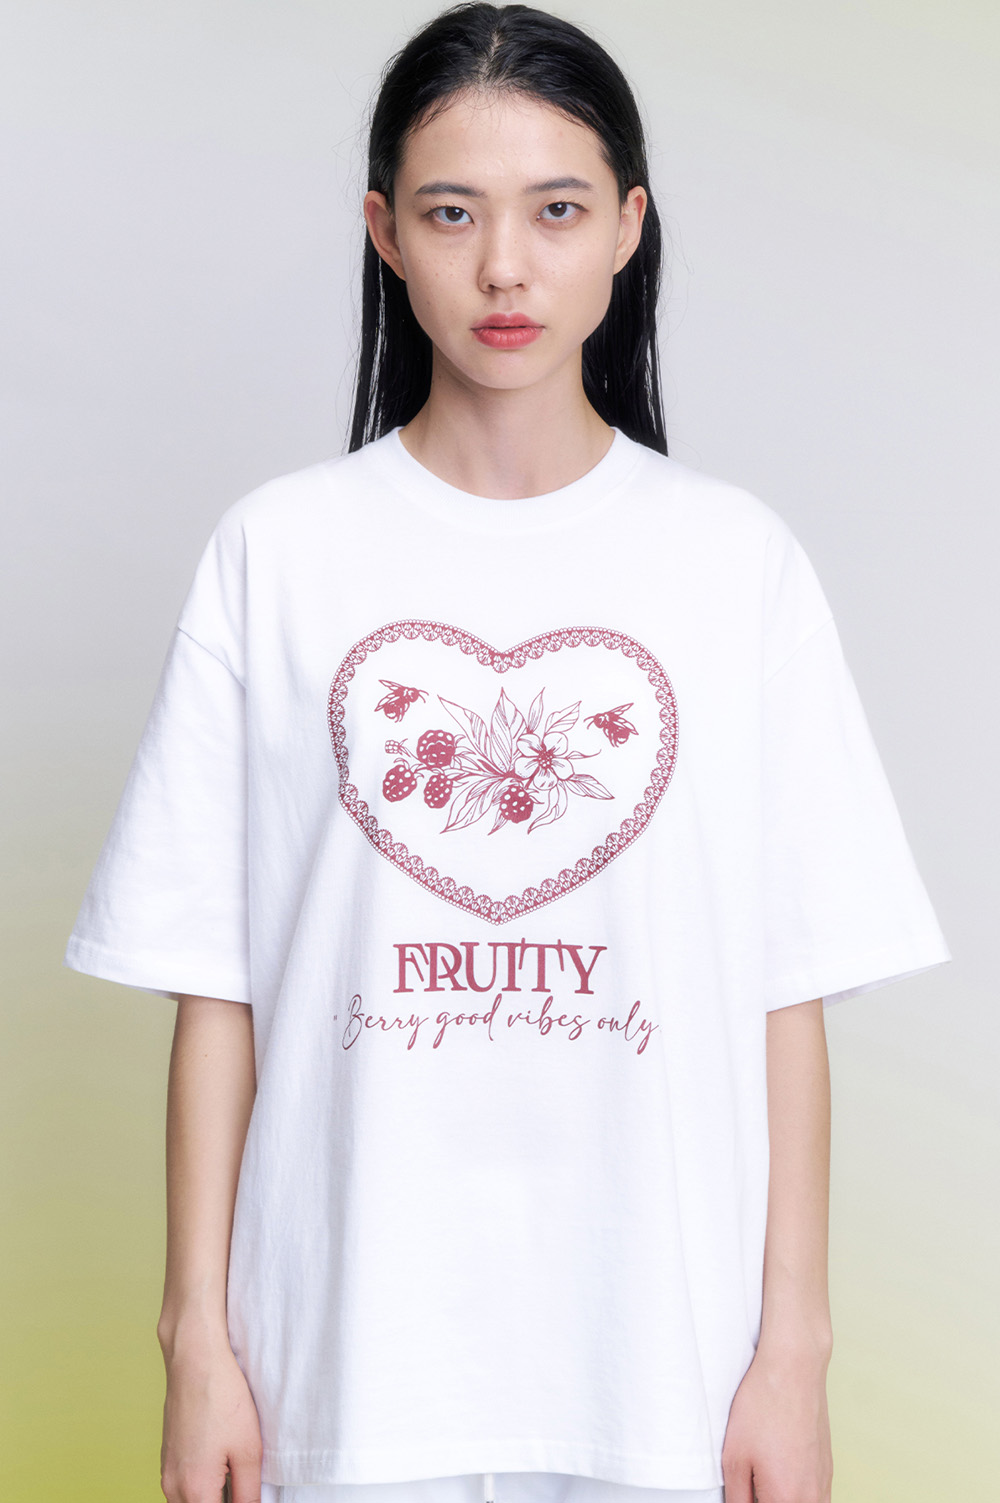 프루티 빈티지 오버핏 티셔츠 화이트